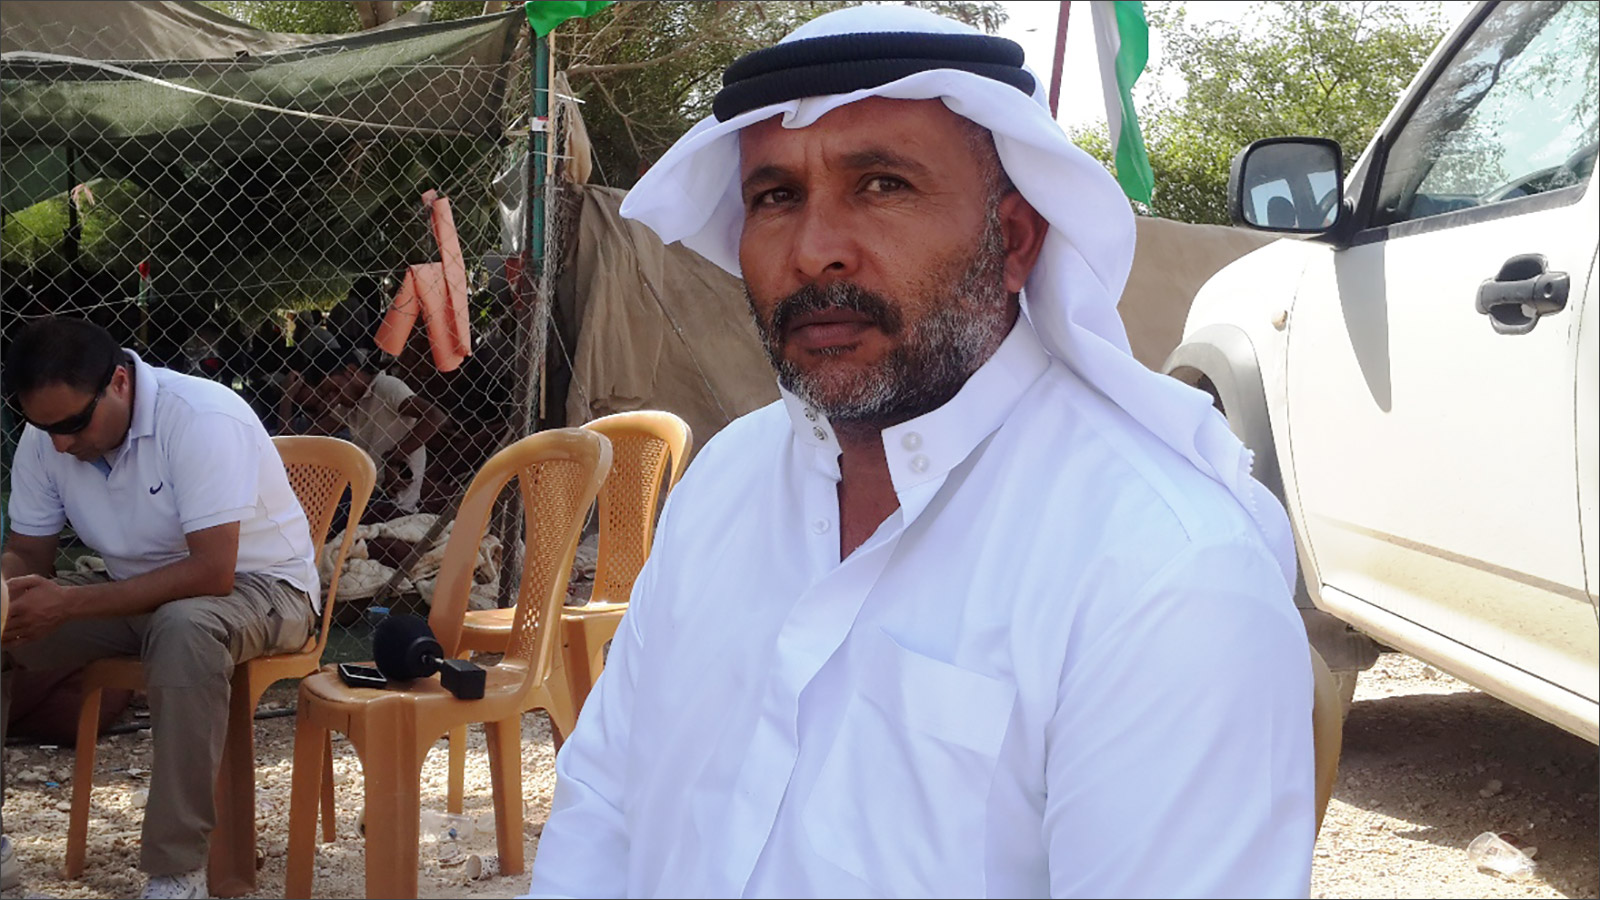  أحمد أبو داهوك أوقف الاحتلال الإسرائيلي تصريح عمله لإجباره على الرحيل عن الخان الأحمر (الجزيرة)